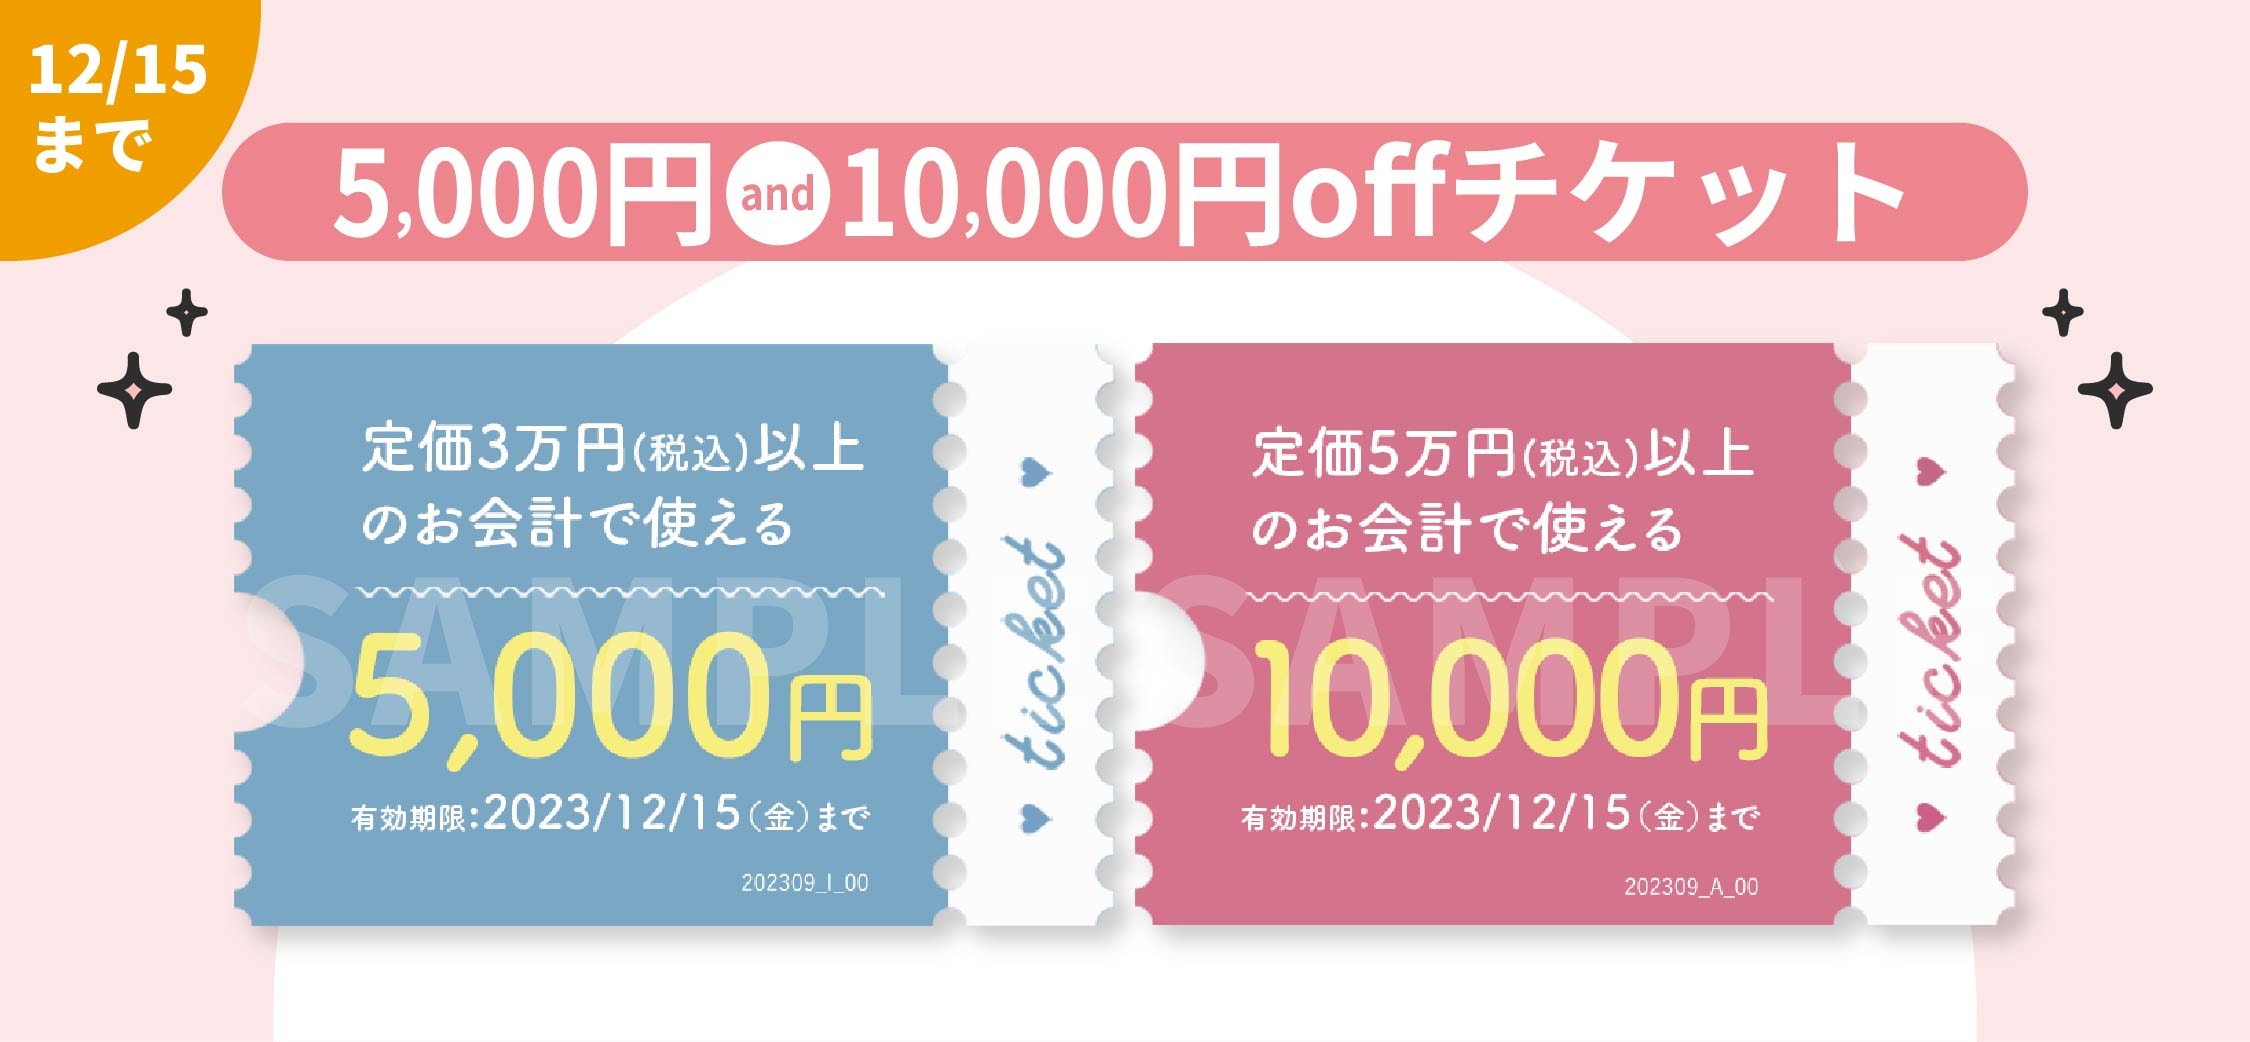 【9.1-12.15まで】5,000円/10,000円offチケット 